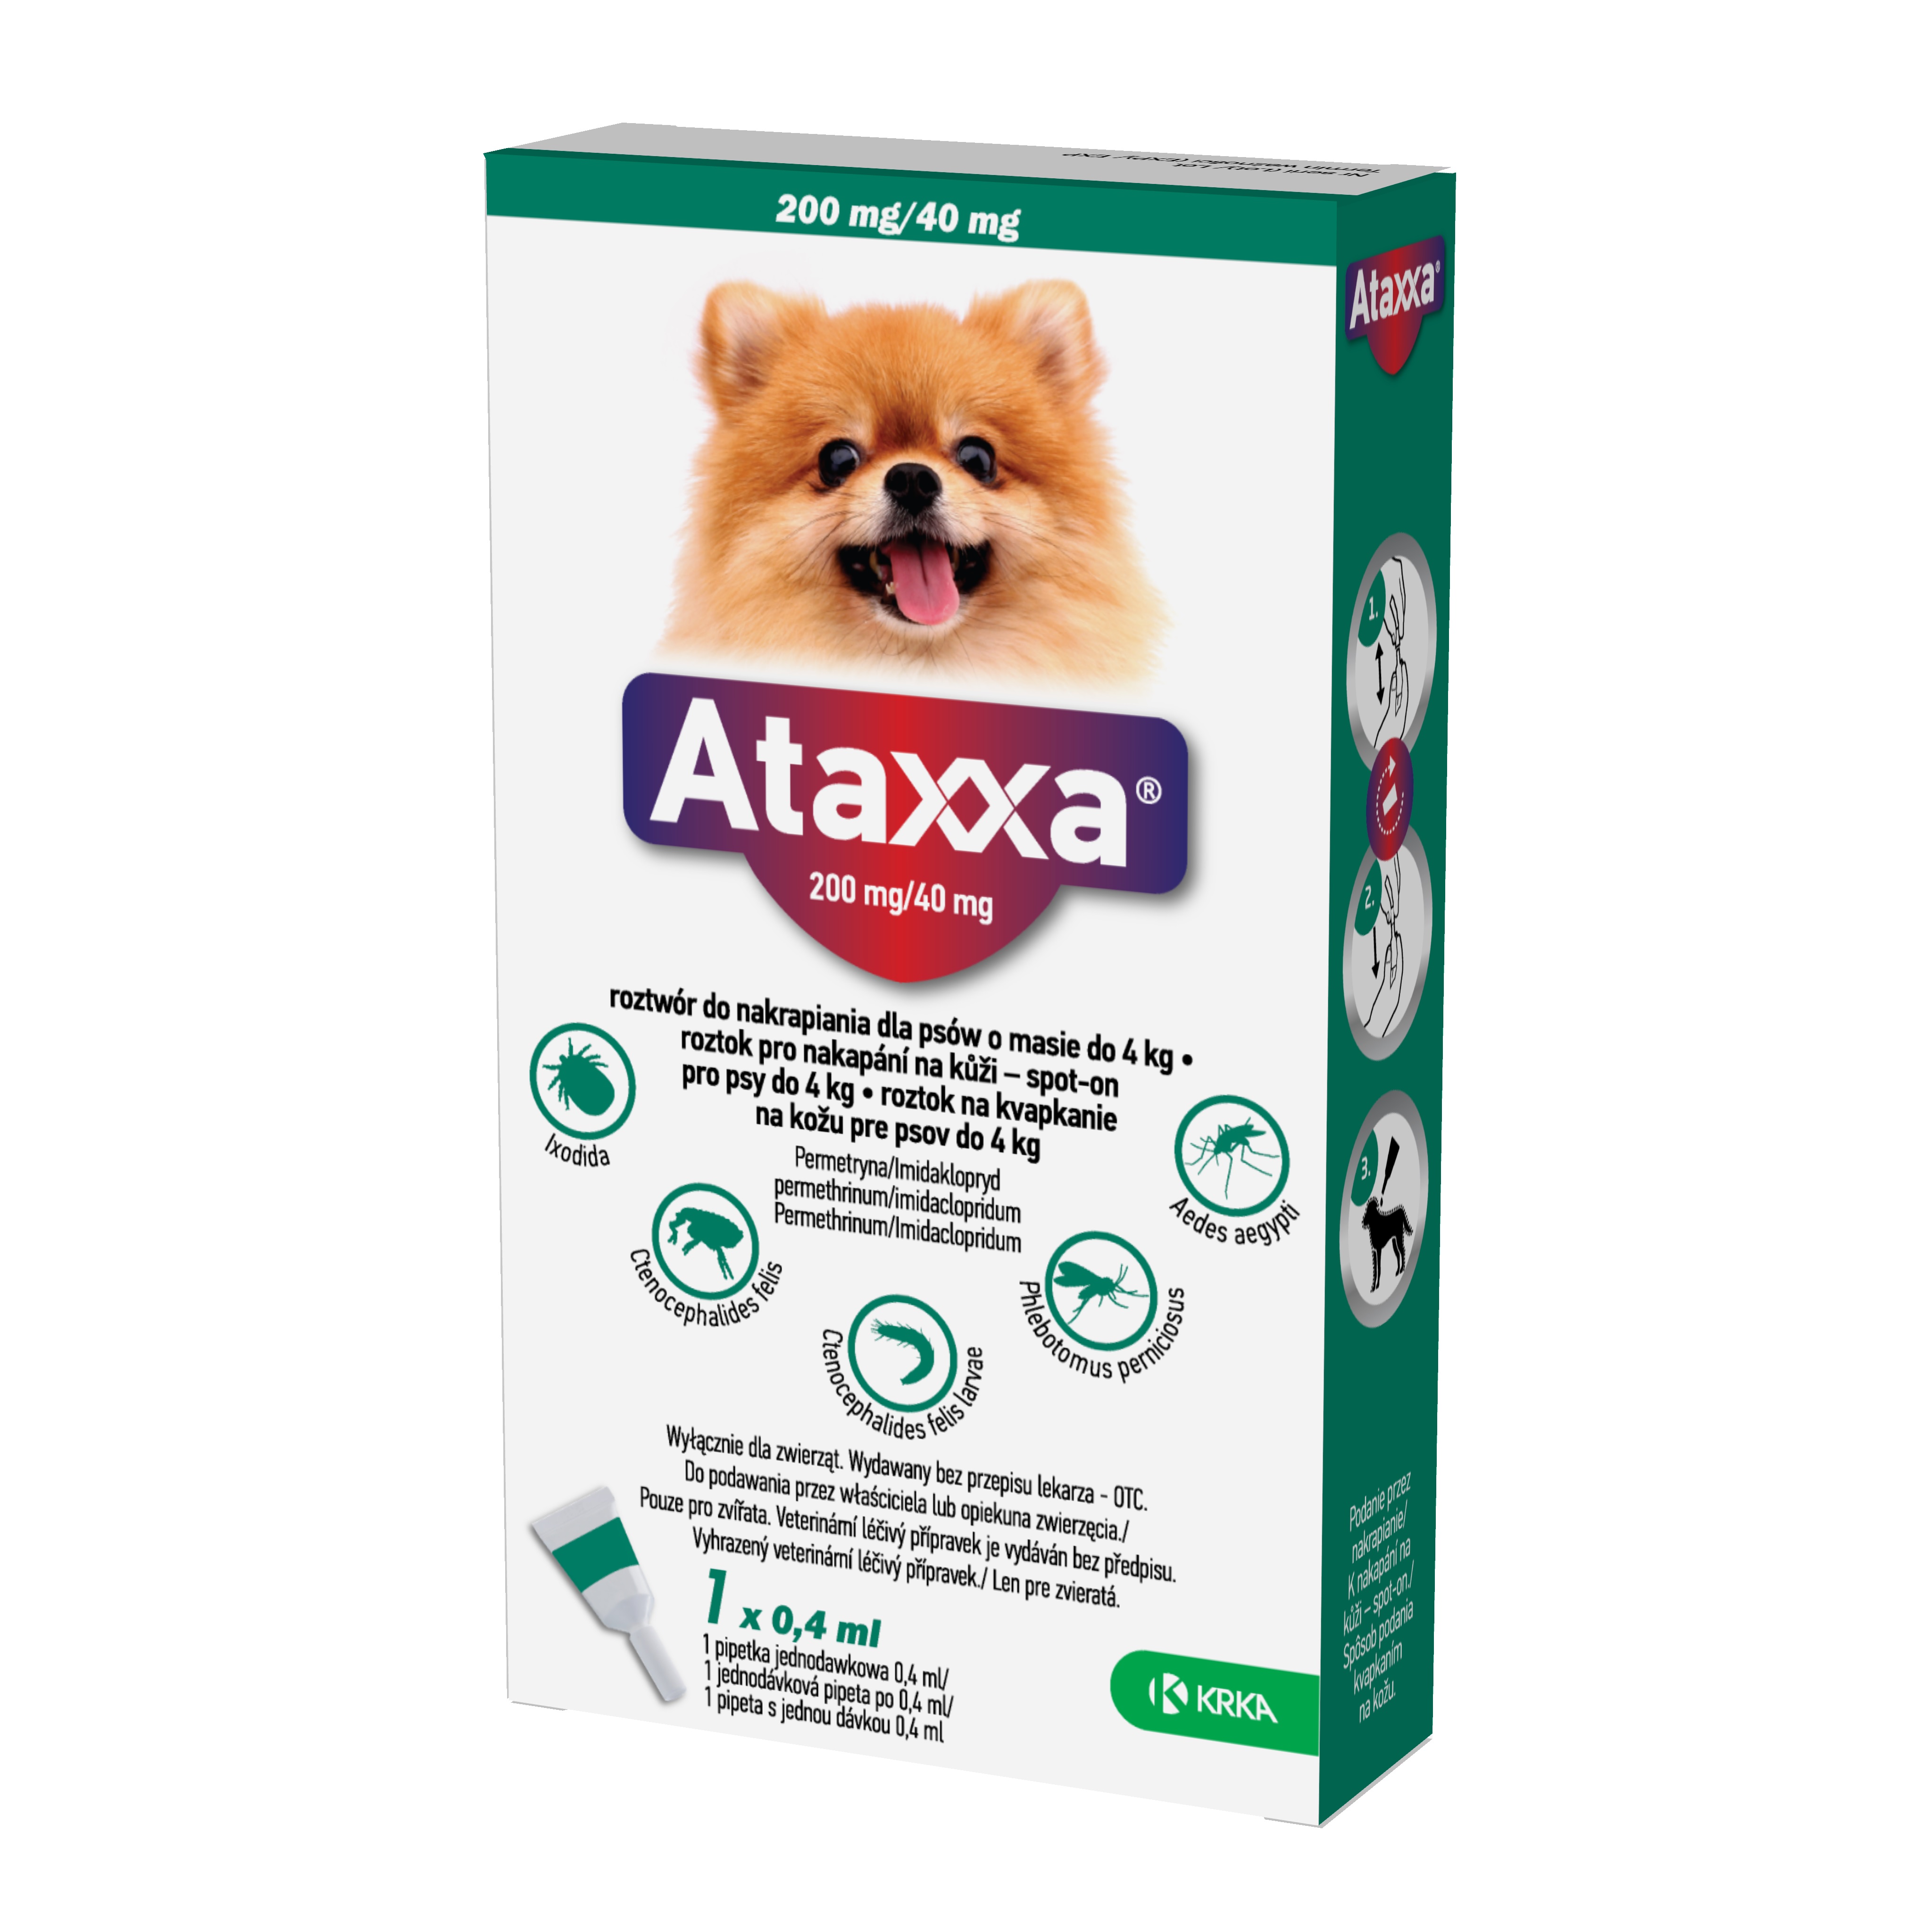 Ataxxa 200 mg/40 mg, roztok pro nakapání na kůži – spot-on pro psy do 4 kg 1 x 0,4 ml